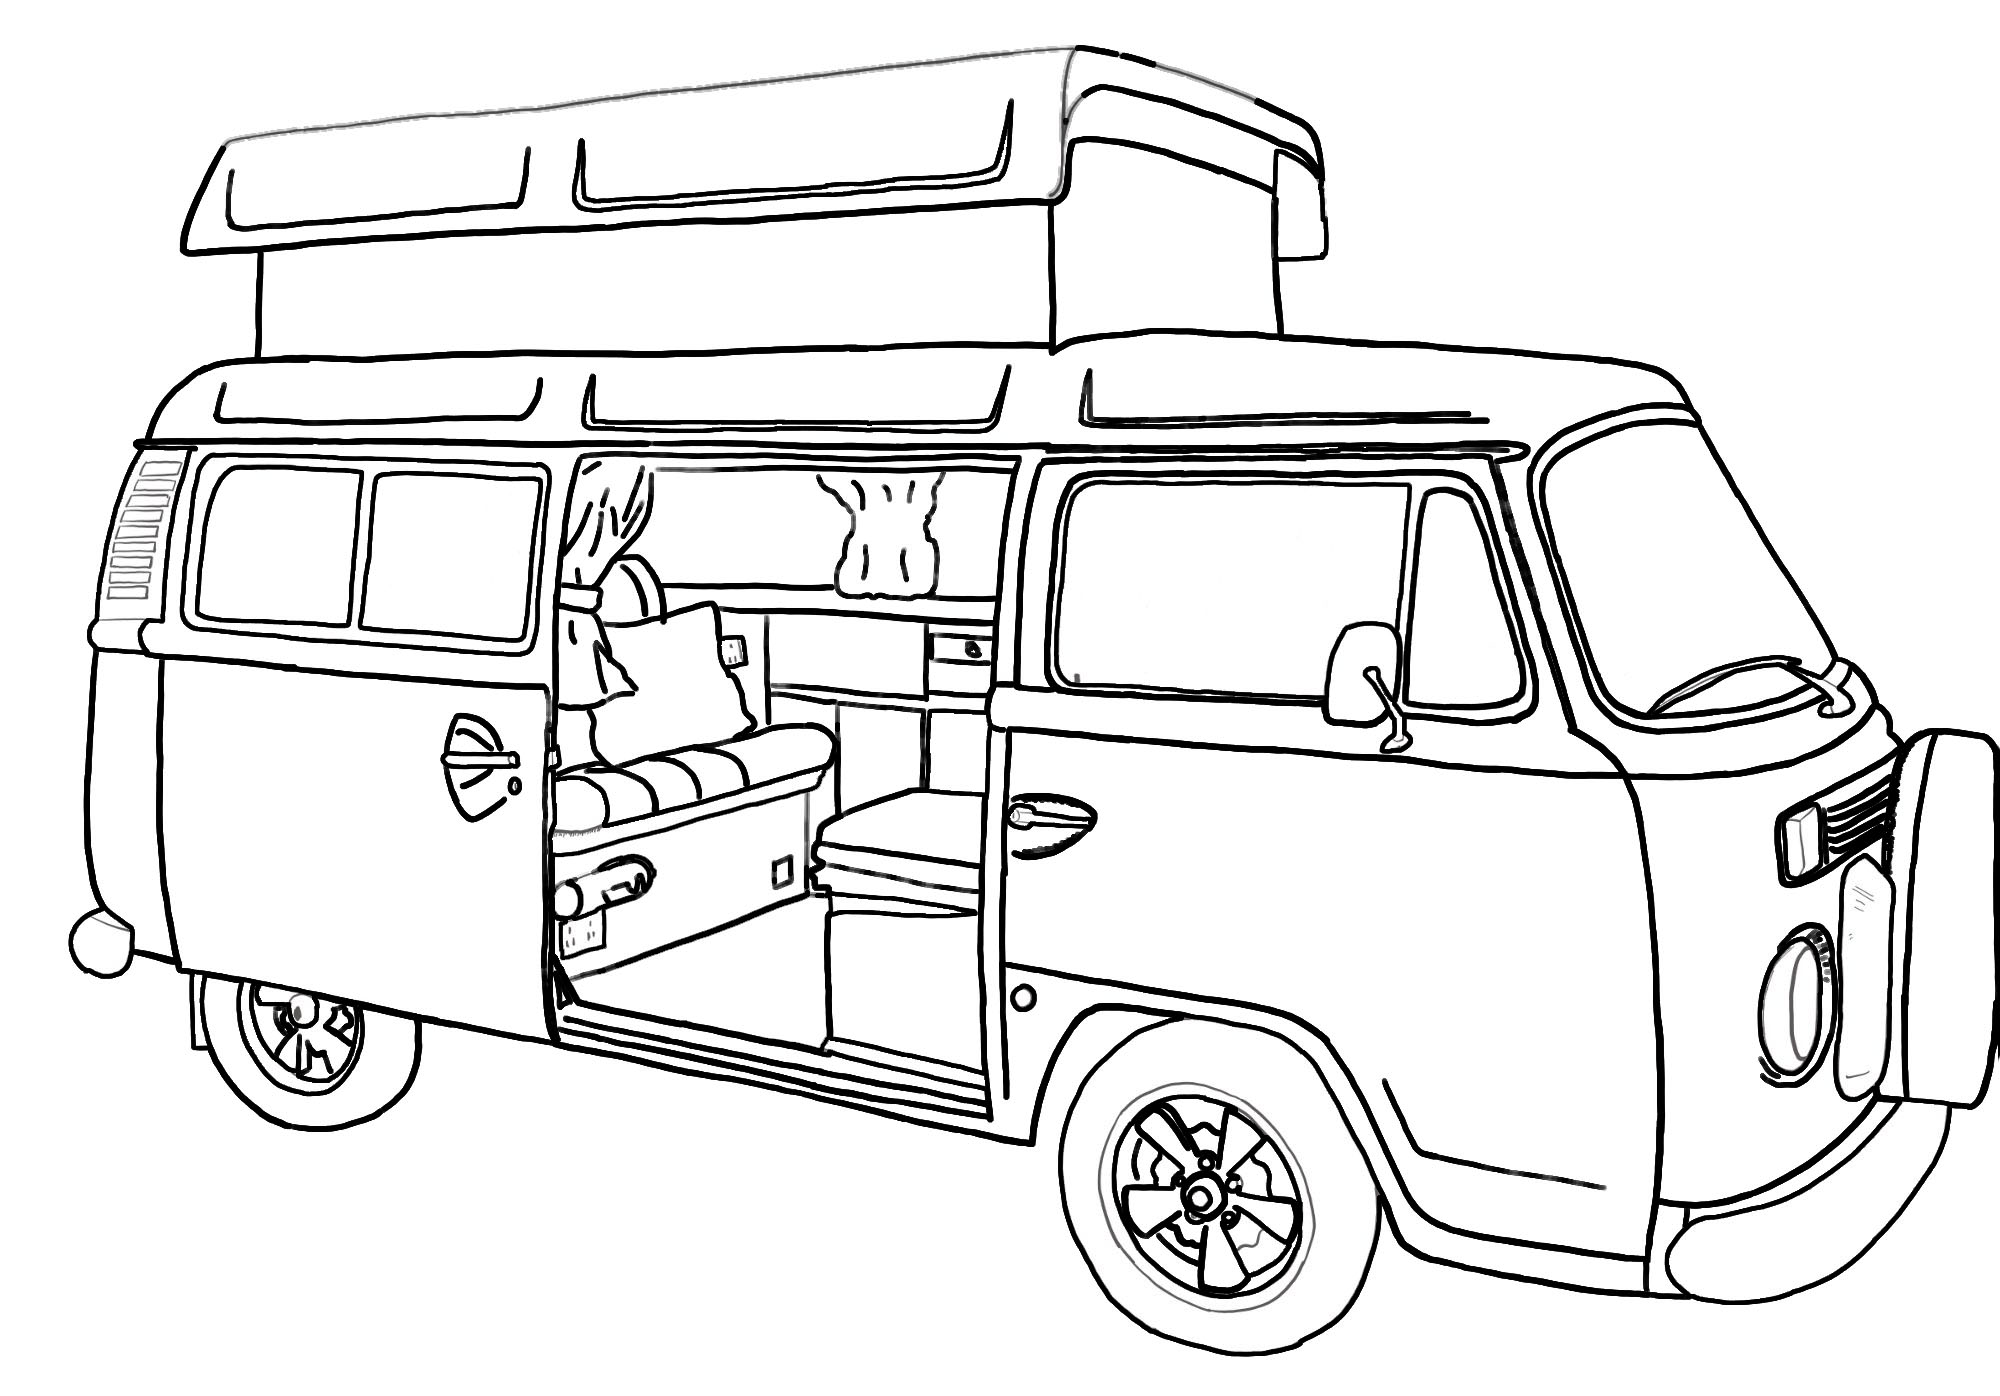 Image of VW Campervan